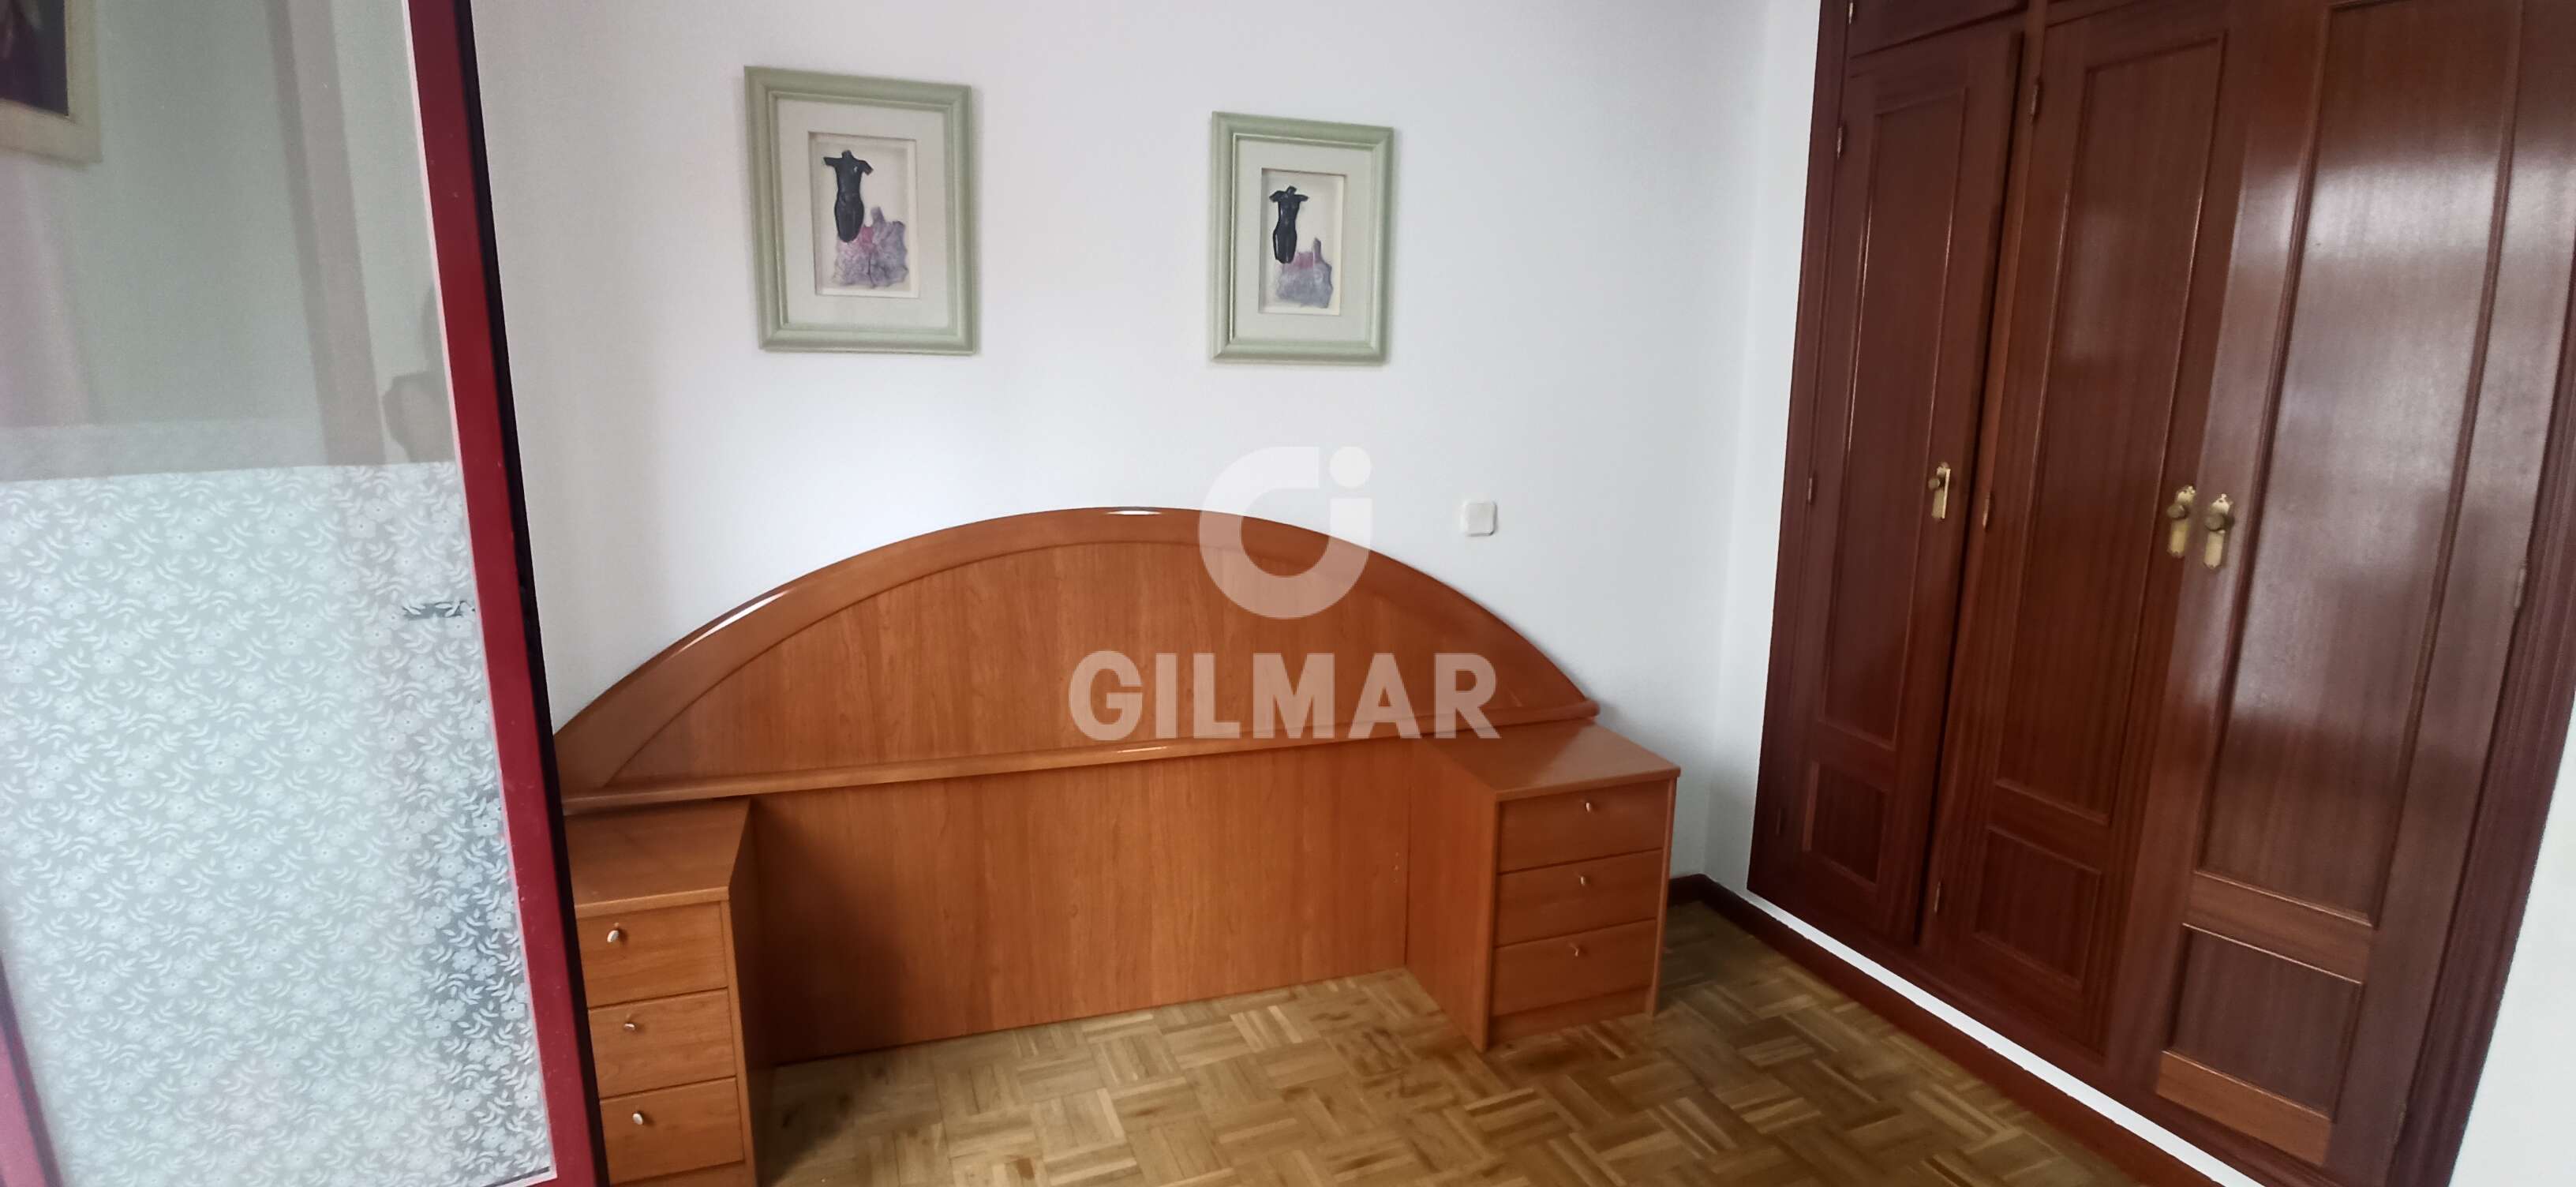 Apartamento en alquiler en Berruguete – Madrid | Gilmar Consulting